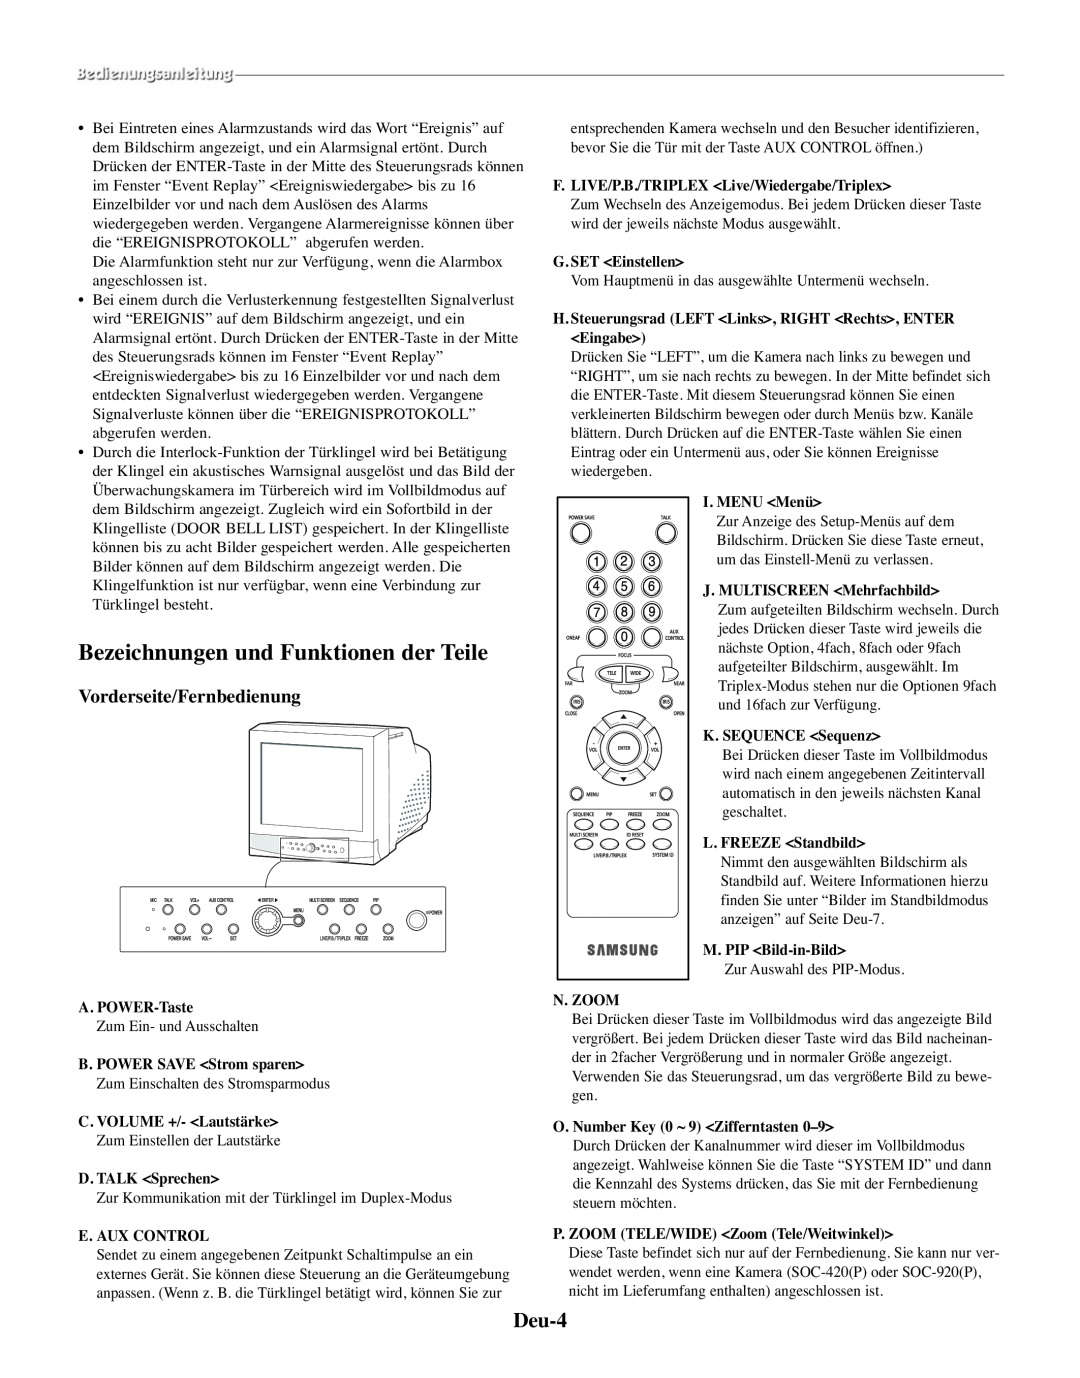 Samsung SMO-210TRP Bezeichnungen und Funktionen der Teile, Deu-4, Vorderseite/Fernbedienung, A. POWER-Taste, I. MENU Menü 